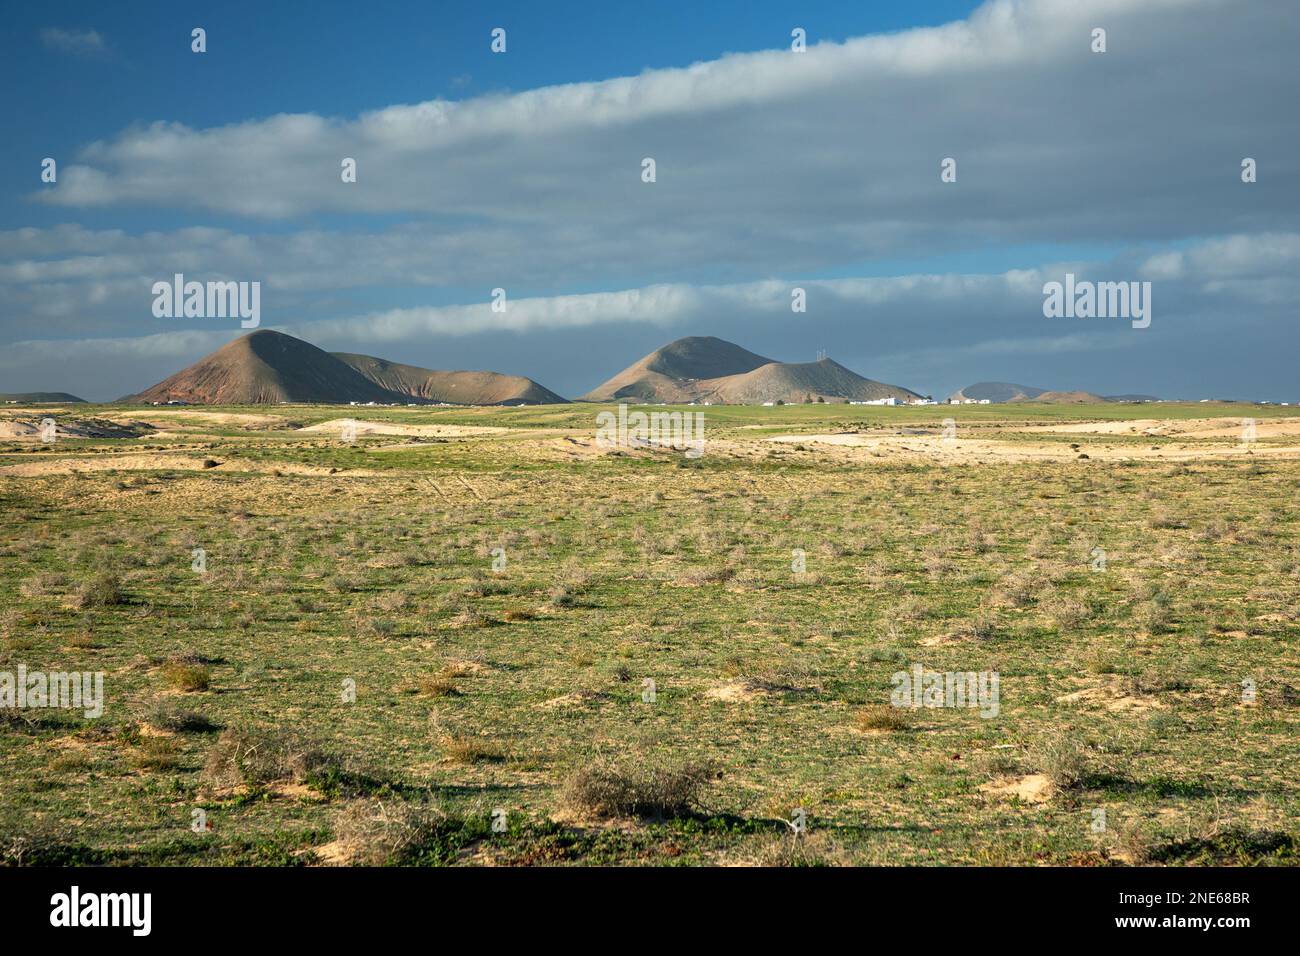 Plaine de sable d'El Jable avec des montagnes volcaniques comme Montana Tamia en arrière-plan, îles Canaries, Lanzarote Banque D'Images